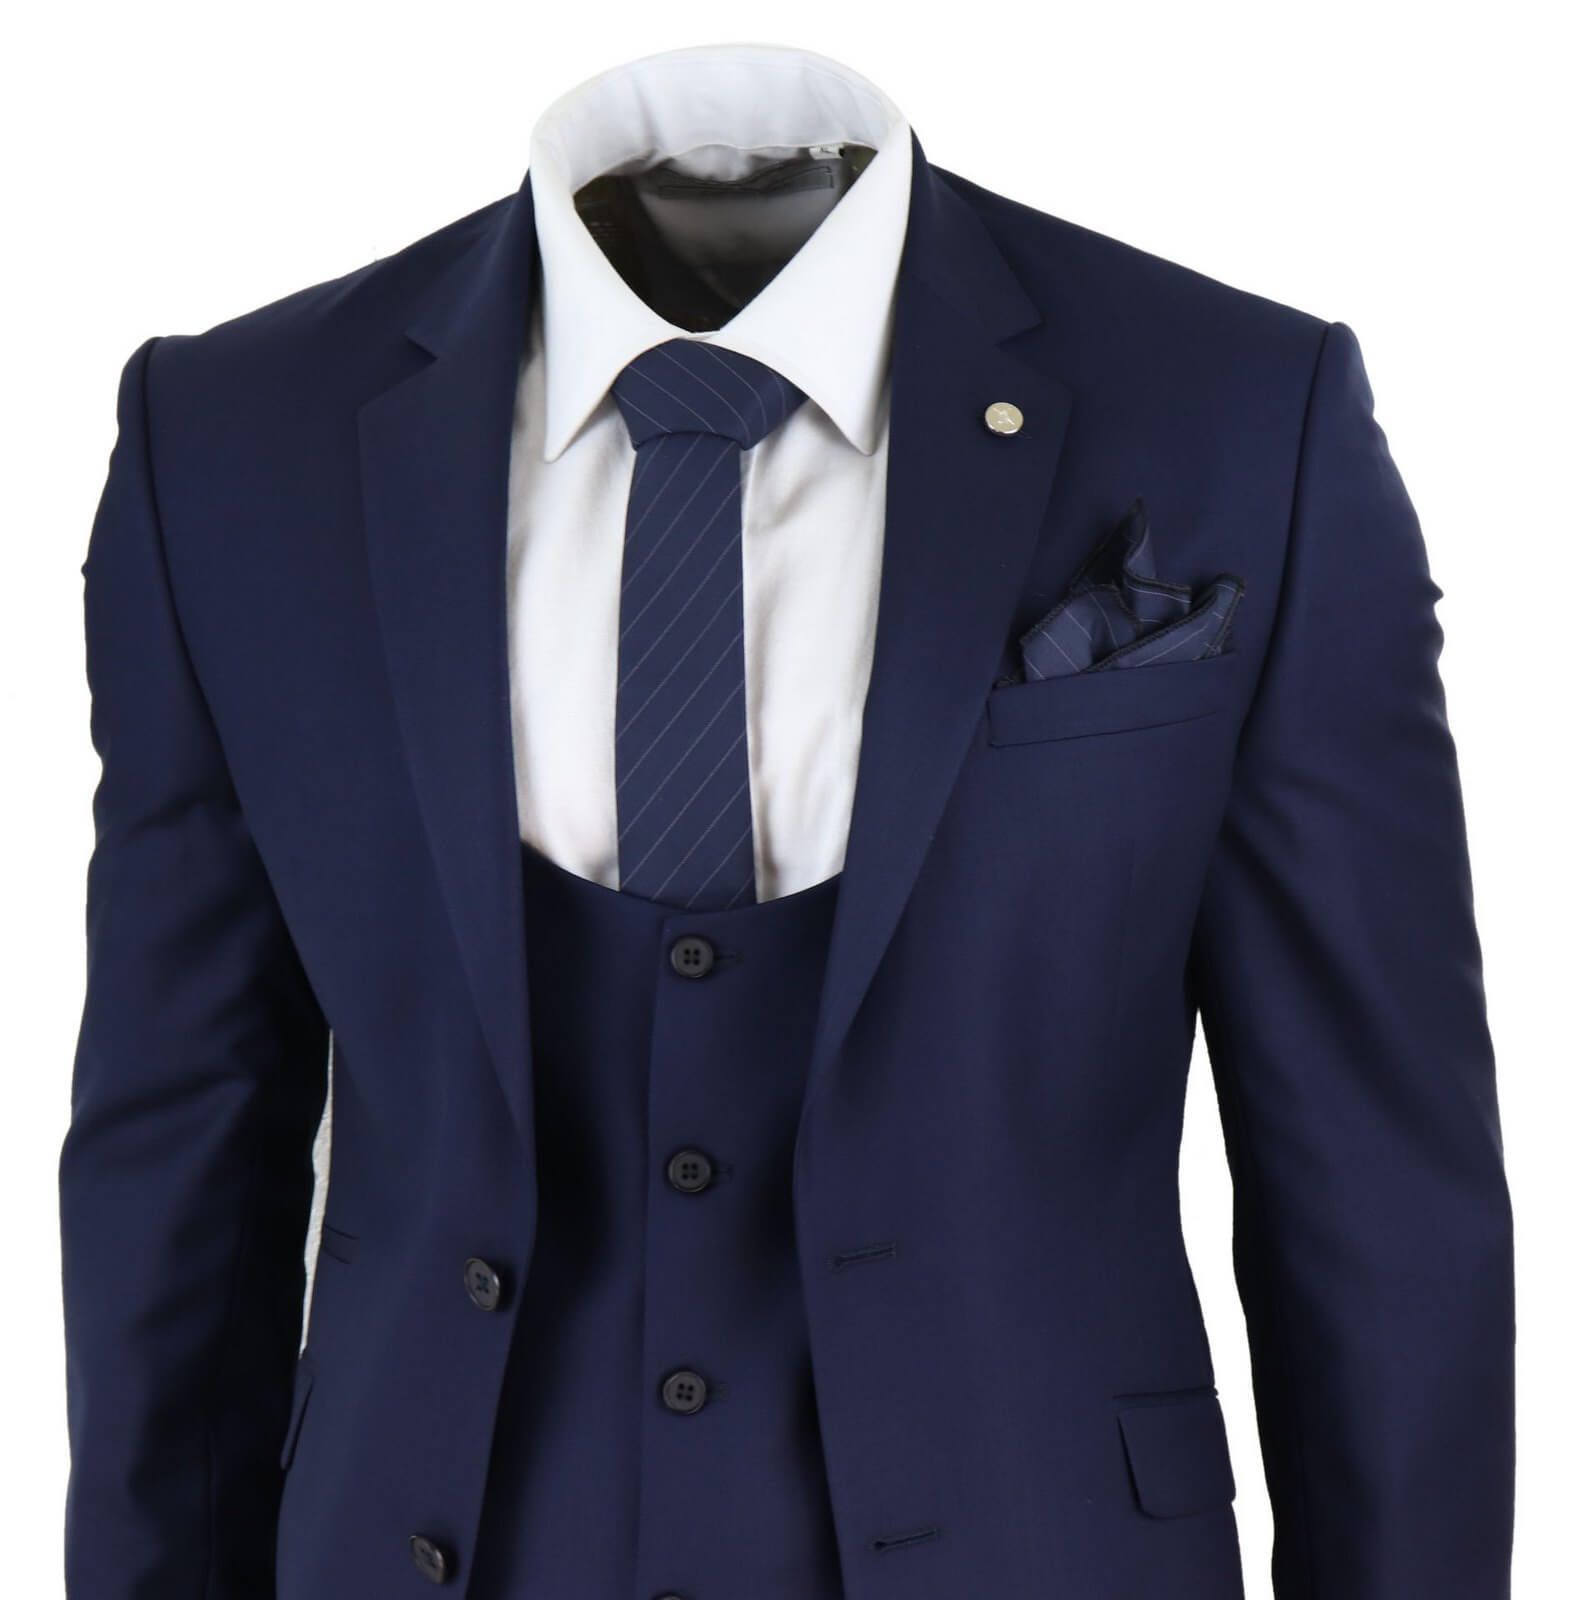 Mens Navy 3 Piece Wedding Suit: Buy Online - Happy Gentleman United States